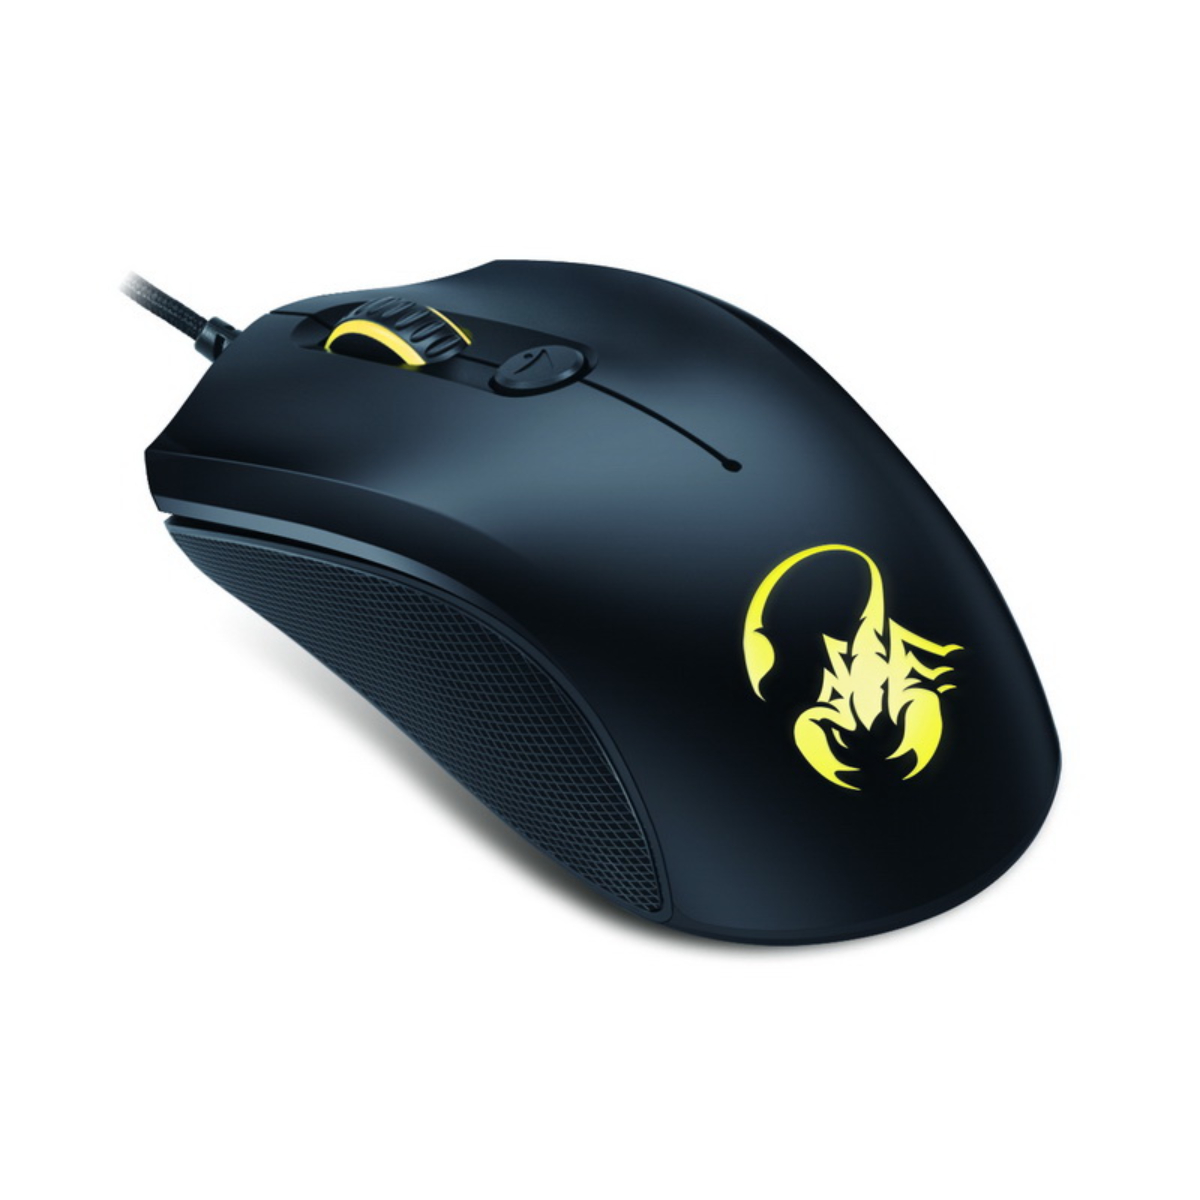 Genius Gaming Mouse (Black) M6-400